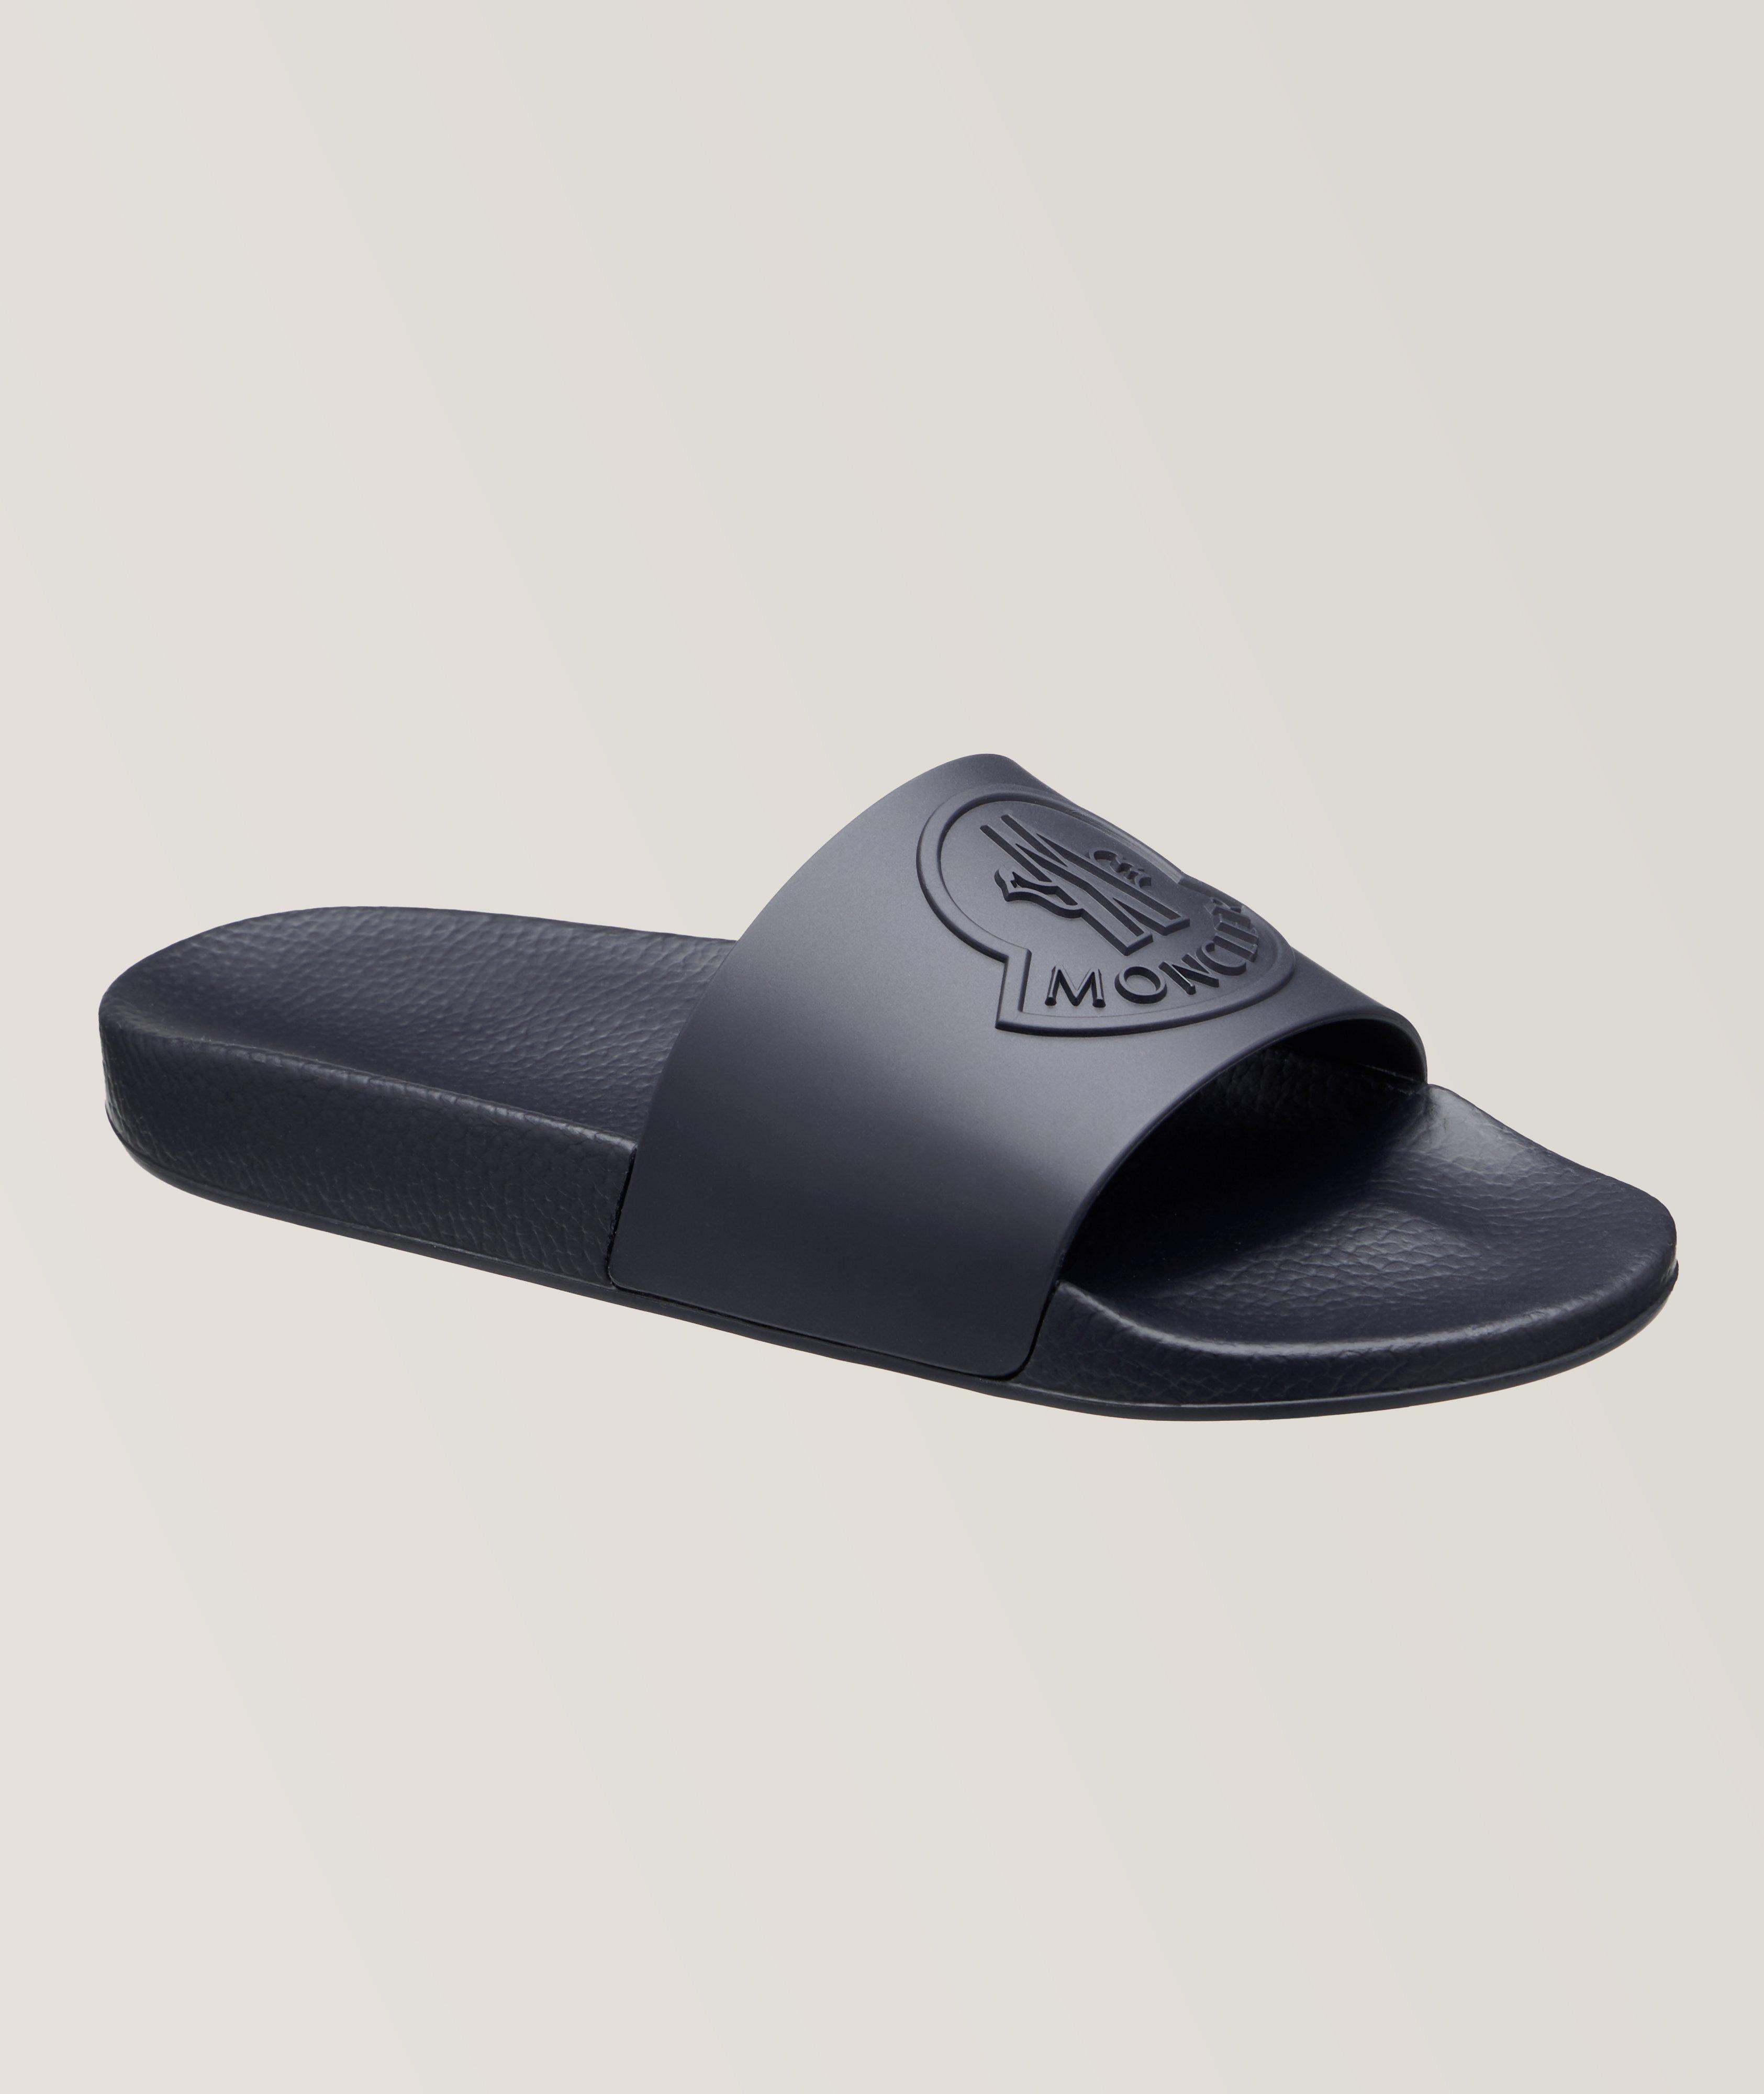 Sandale Basile avec logo image 0